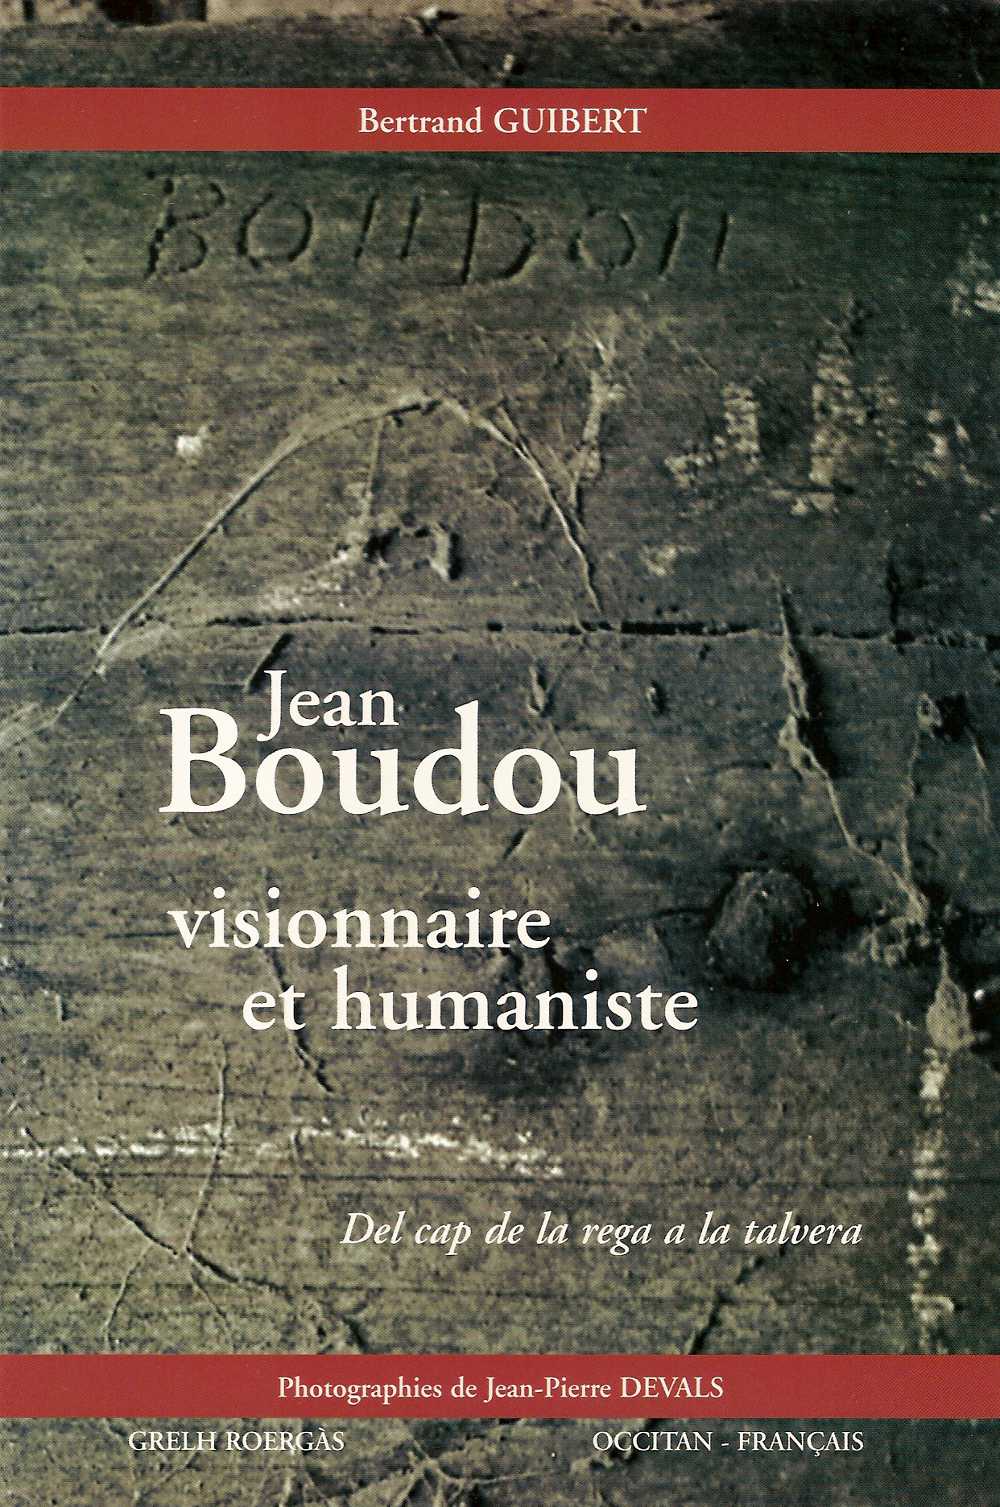 Jean Boudou visionnaire et humaniste,
Bertrand Guibert